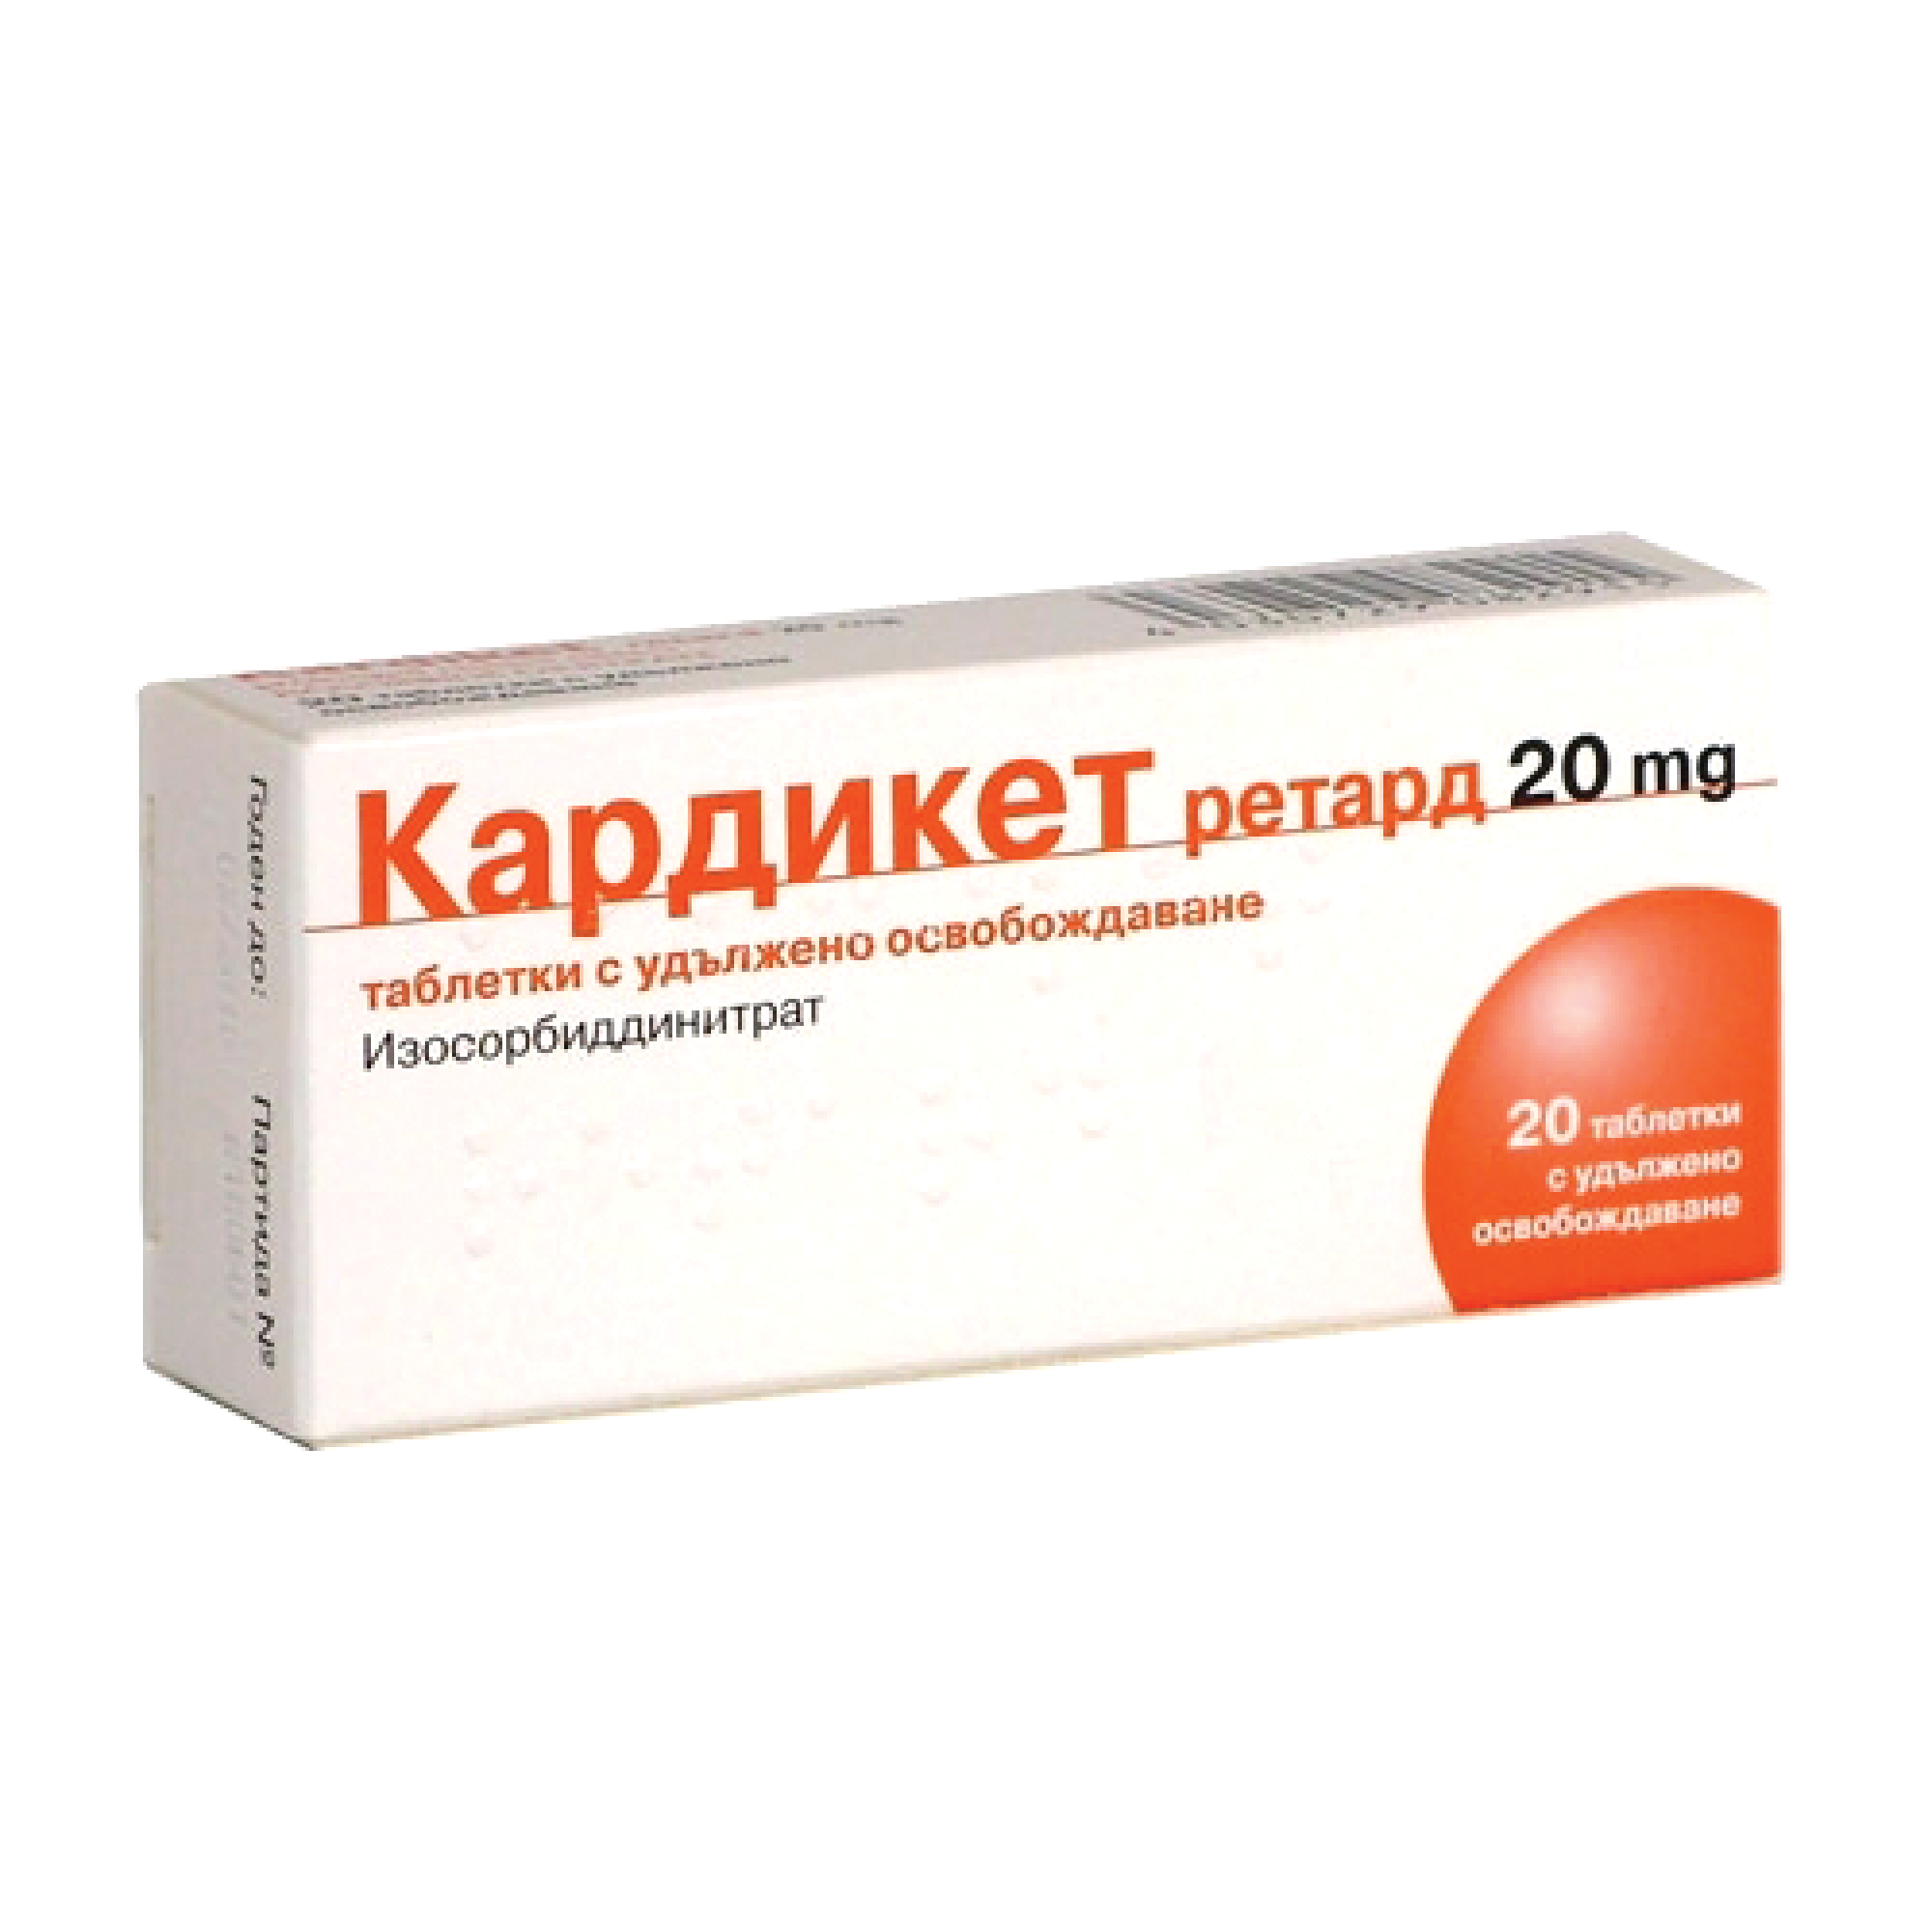 КАРДИКЕТ РЕТАРД табл 20 мг х 20 бр | Аптека Феникс